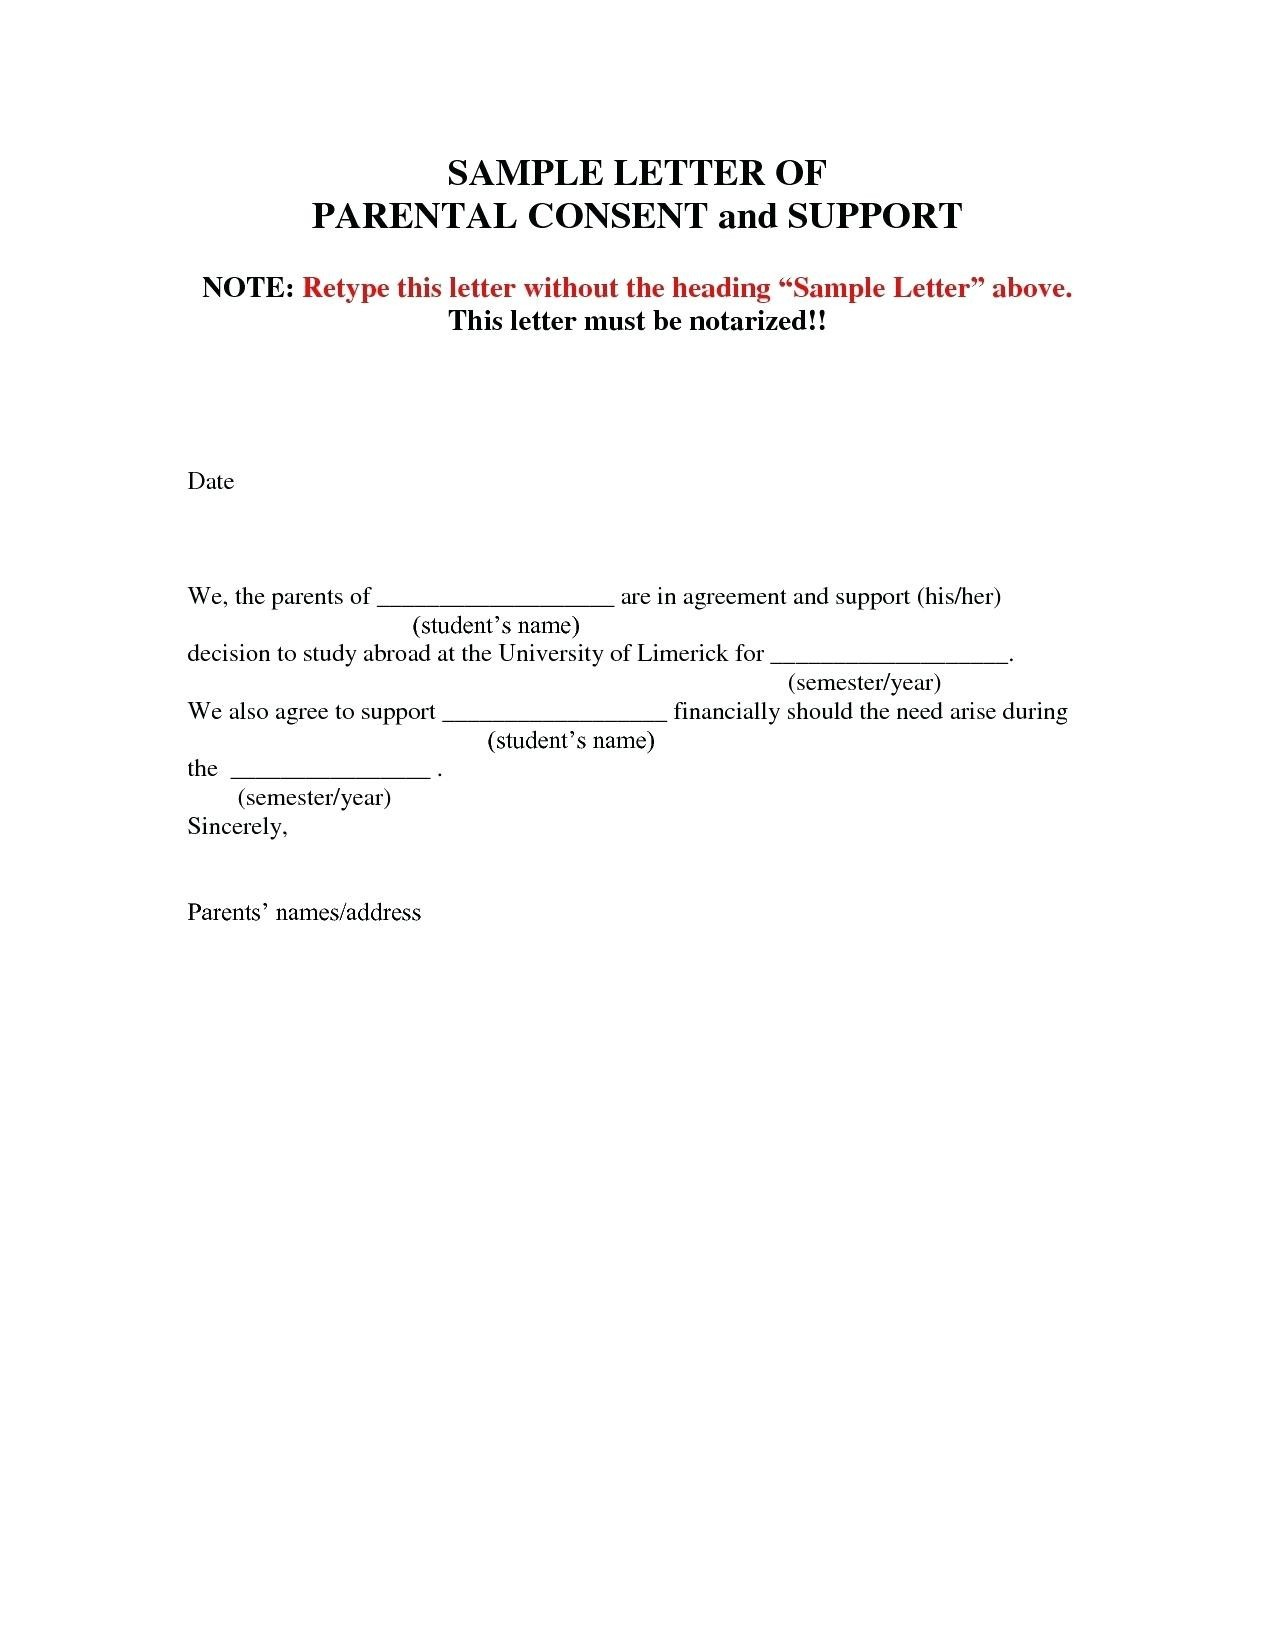 Parent Permission Letter Template - Letter Template Permission New Letter Permission Sample Copy